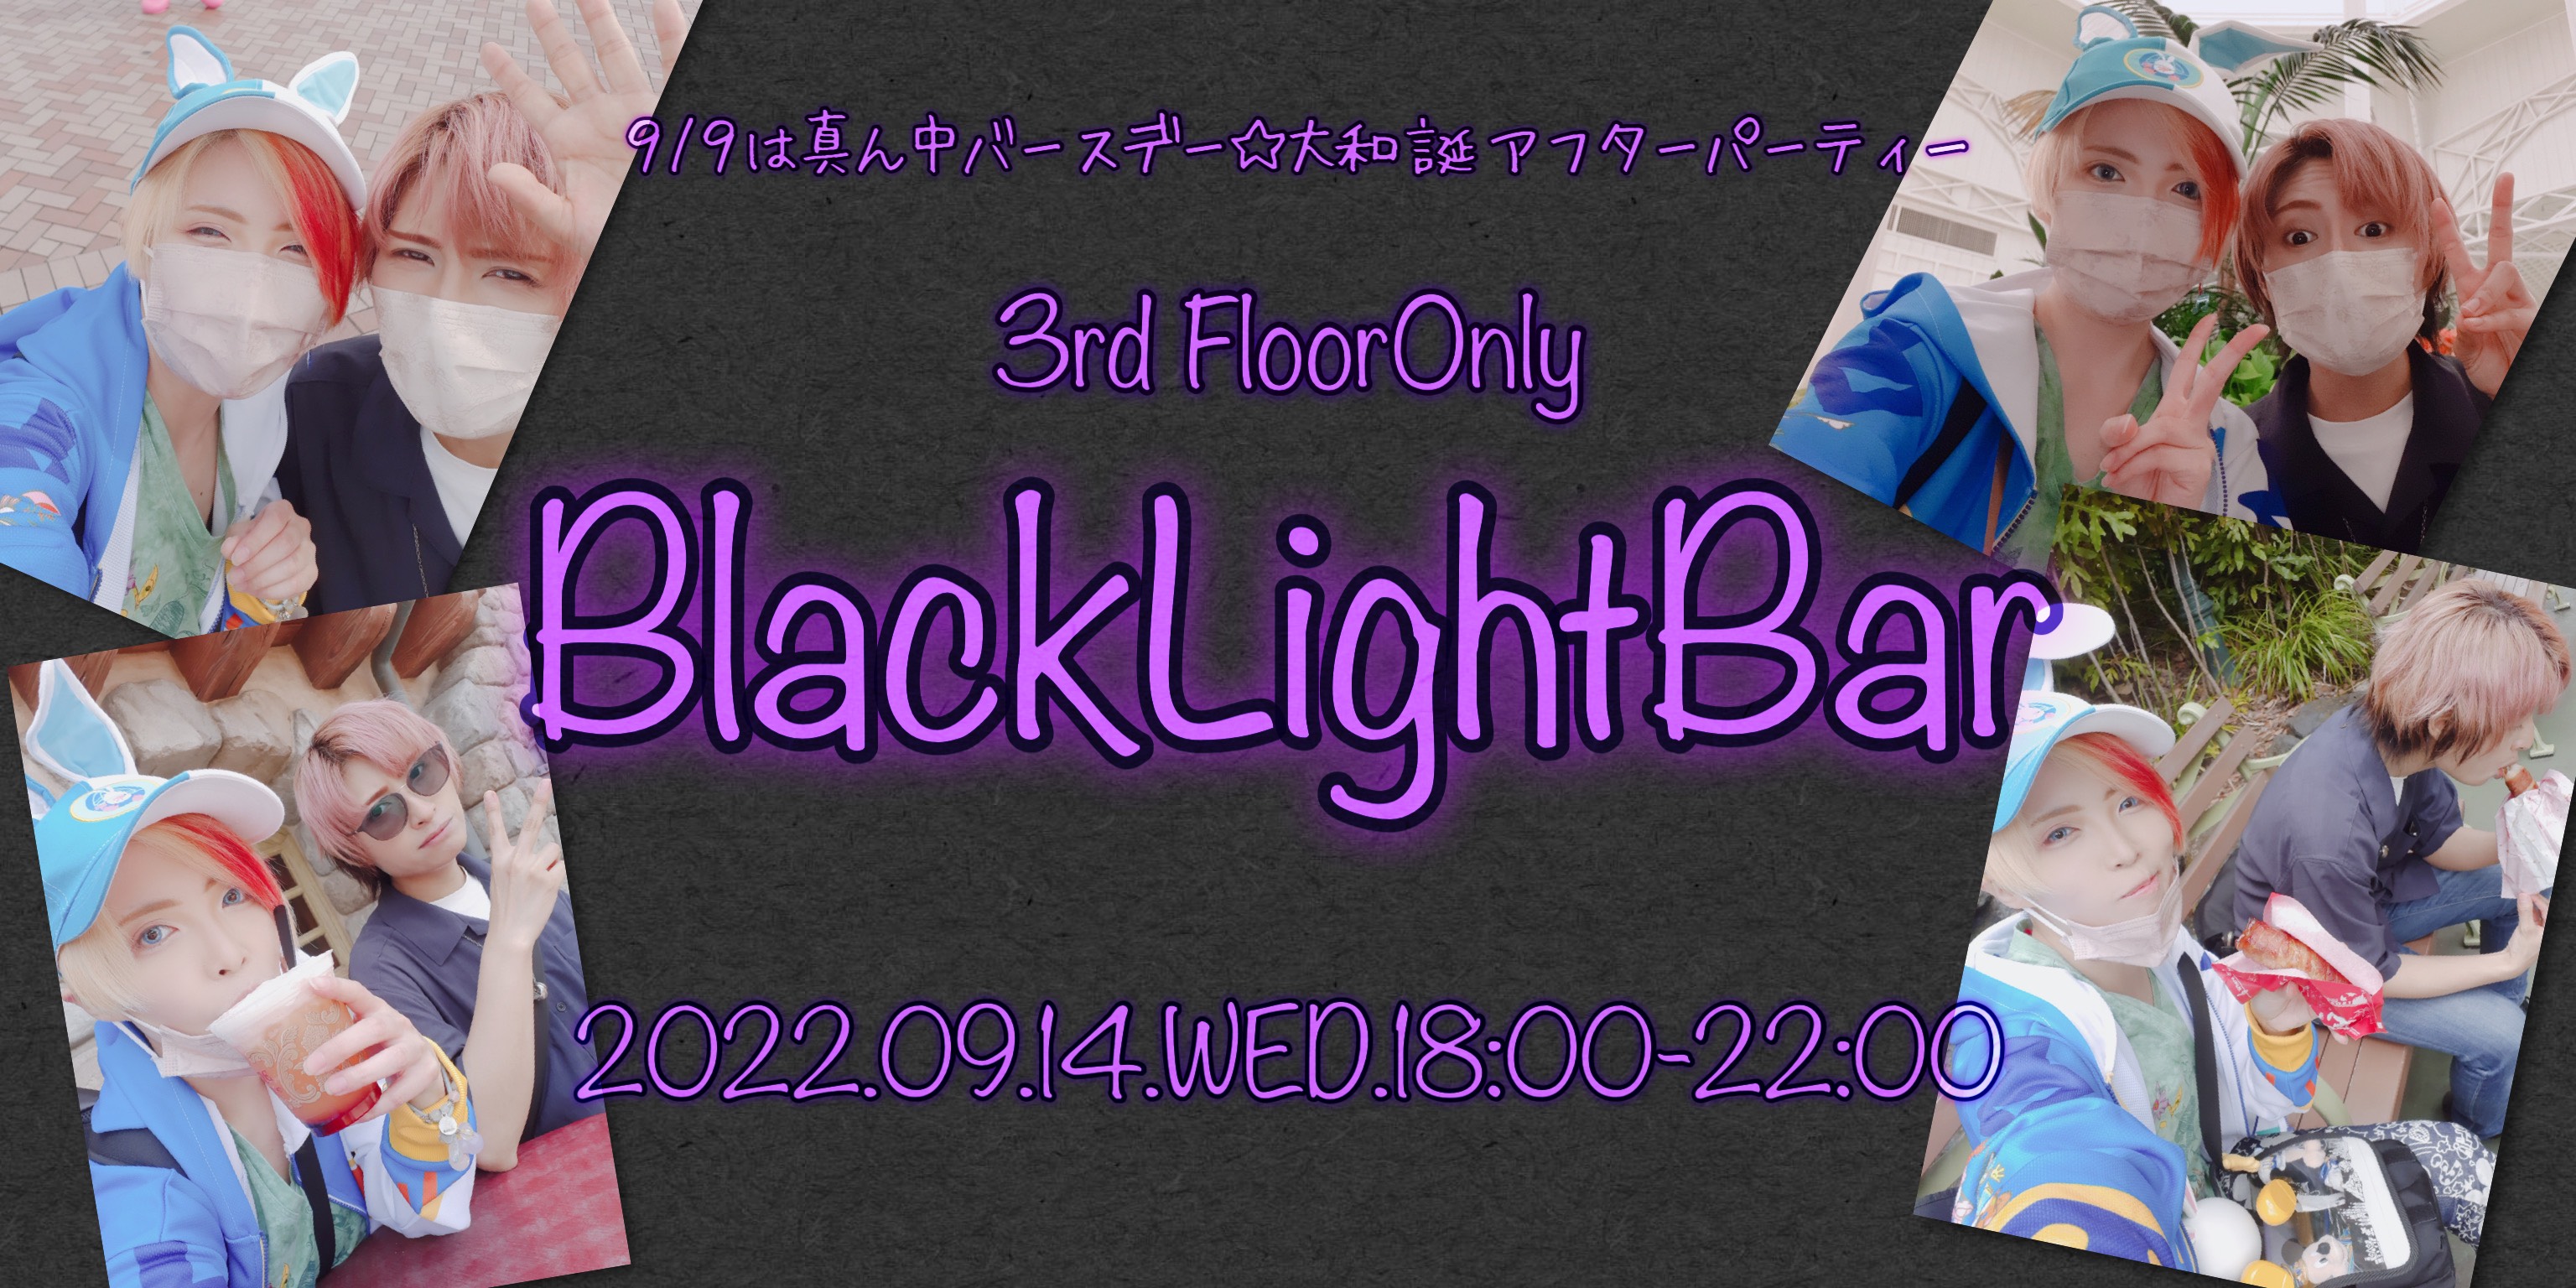 BlackLightBar